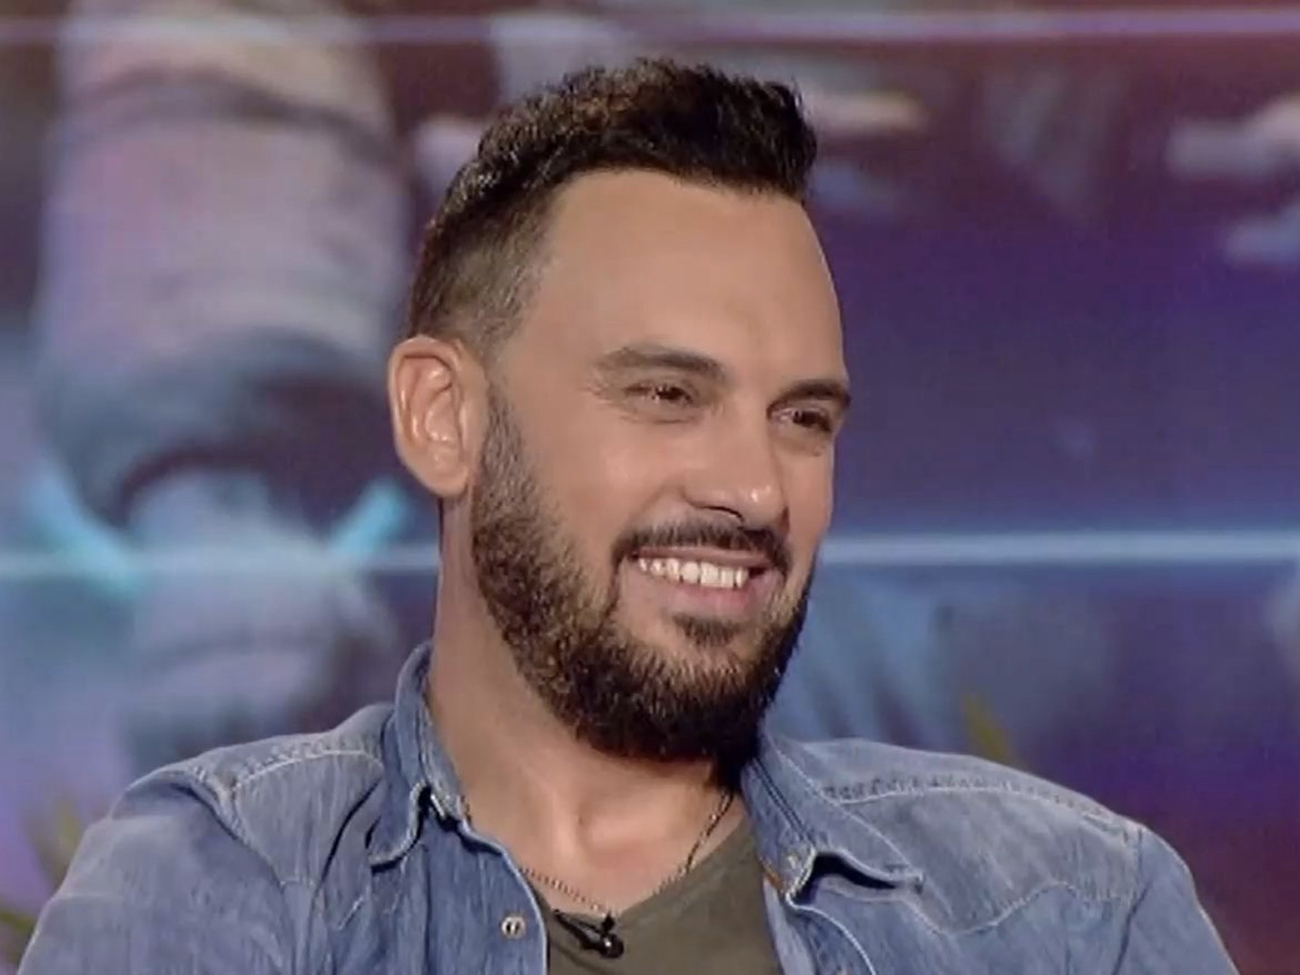 Χρήστος Ανθόπουλος: Για ένα διάστημα είχα κρίσεις πανικού, ήθελα να έχω τον έλεγχο στο καθετί